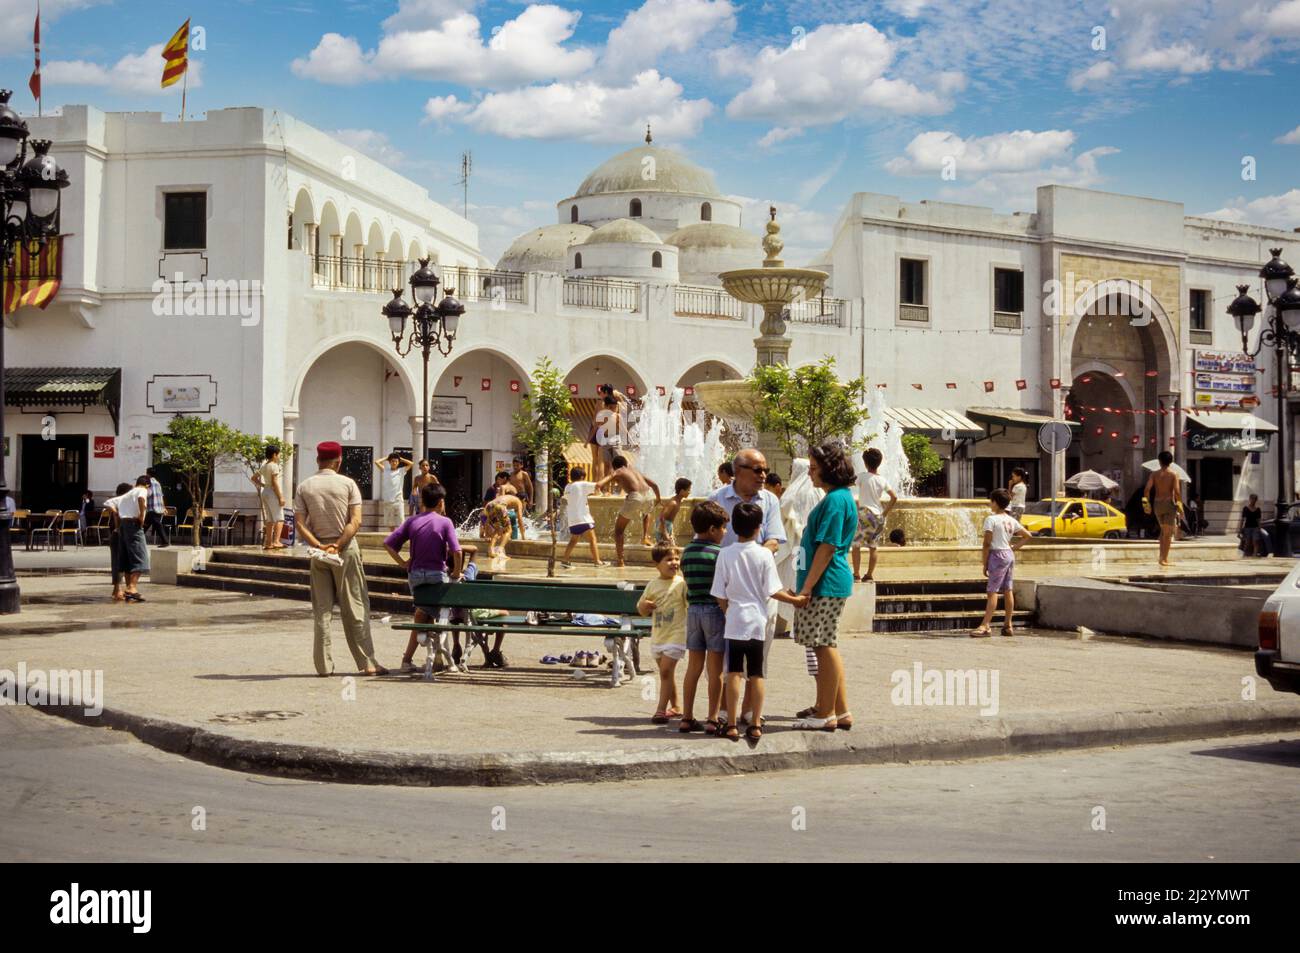 Tunis, Tunesien.  Sidi Mehrez Moschee (1675-92), aus dem Ort Bab Souika.  Kinder spielen in Nachbarschaft Brunnen.  Bab Souika Eingang zur Medina auf rechten Seite. Stockfoto